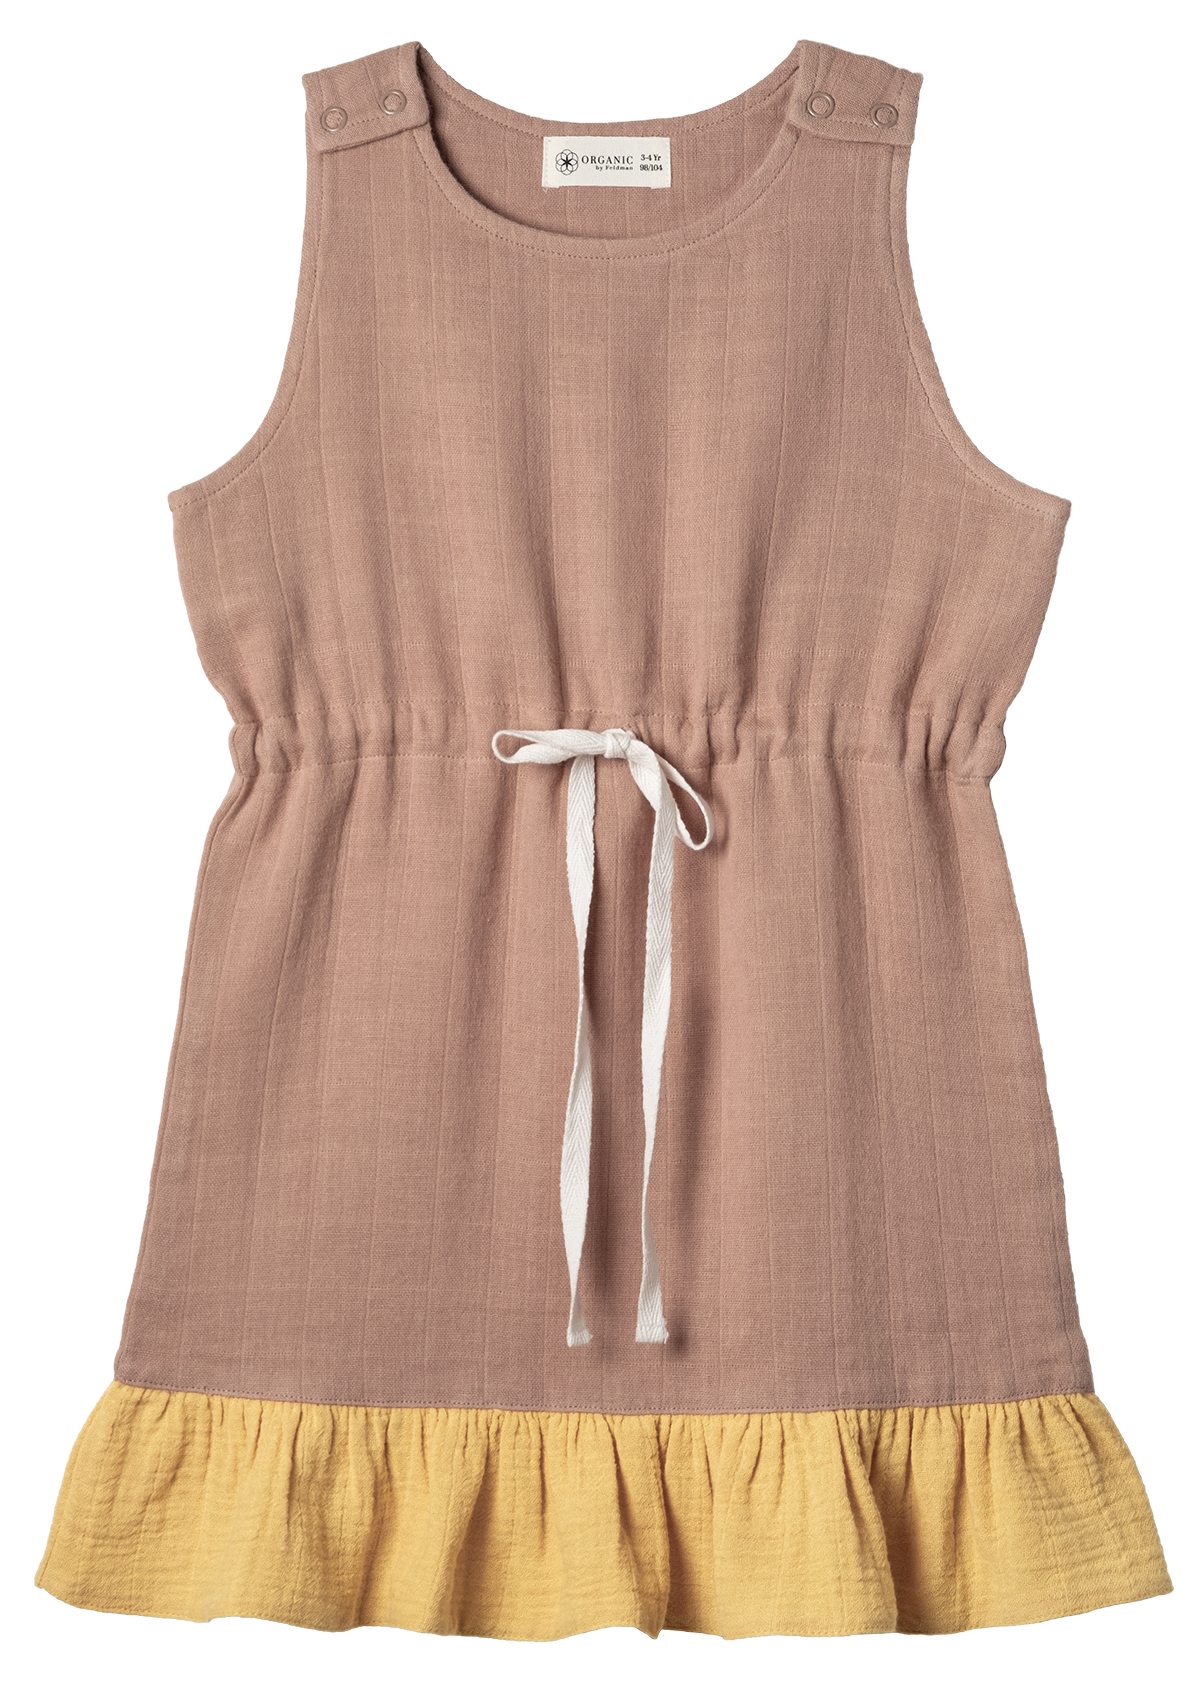 Organic cotton easy jumper dress with adjustable shoulder straps.